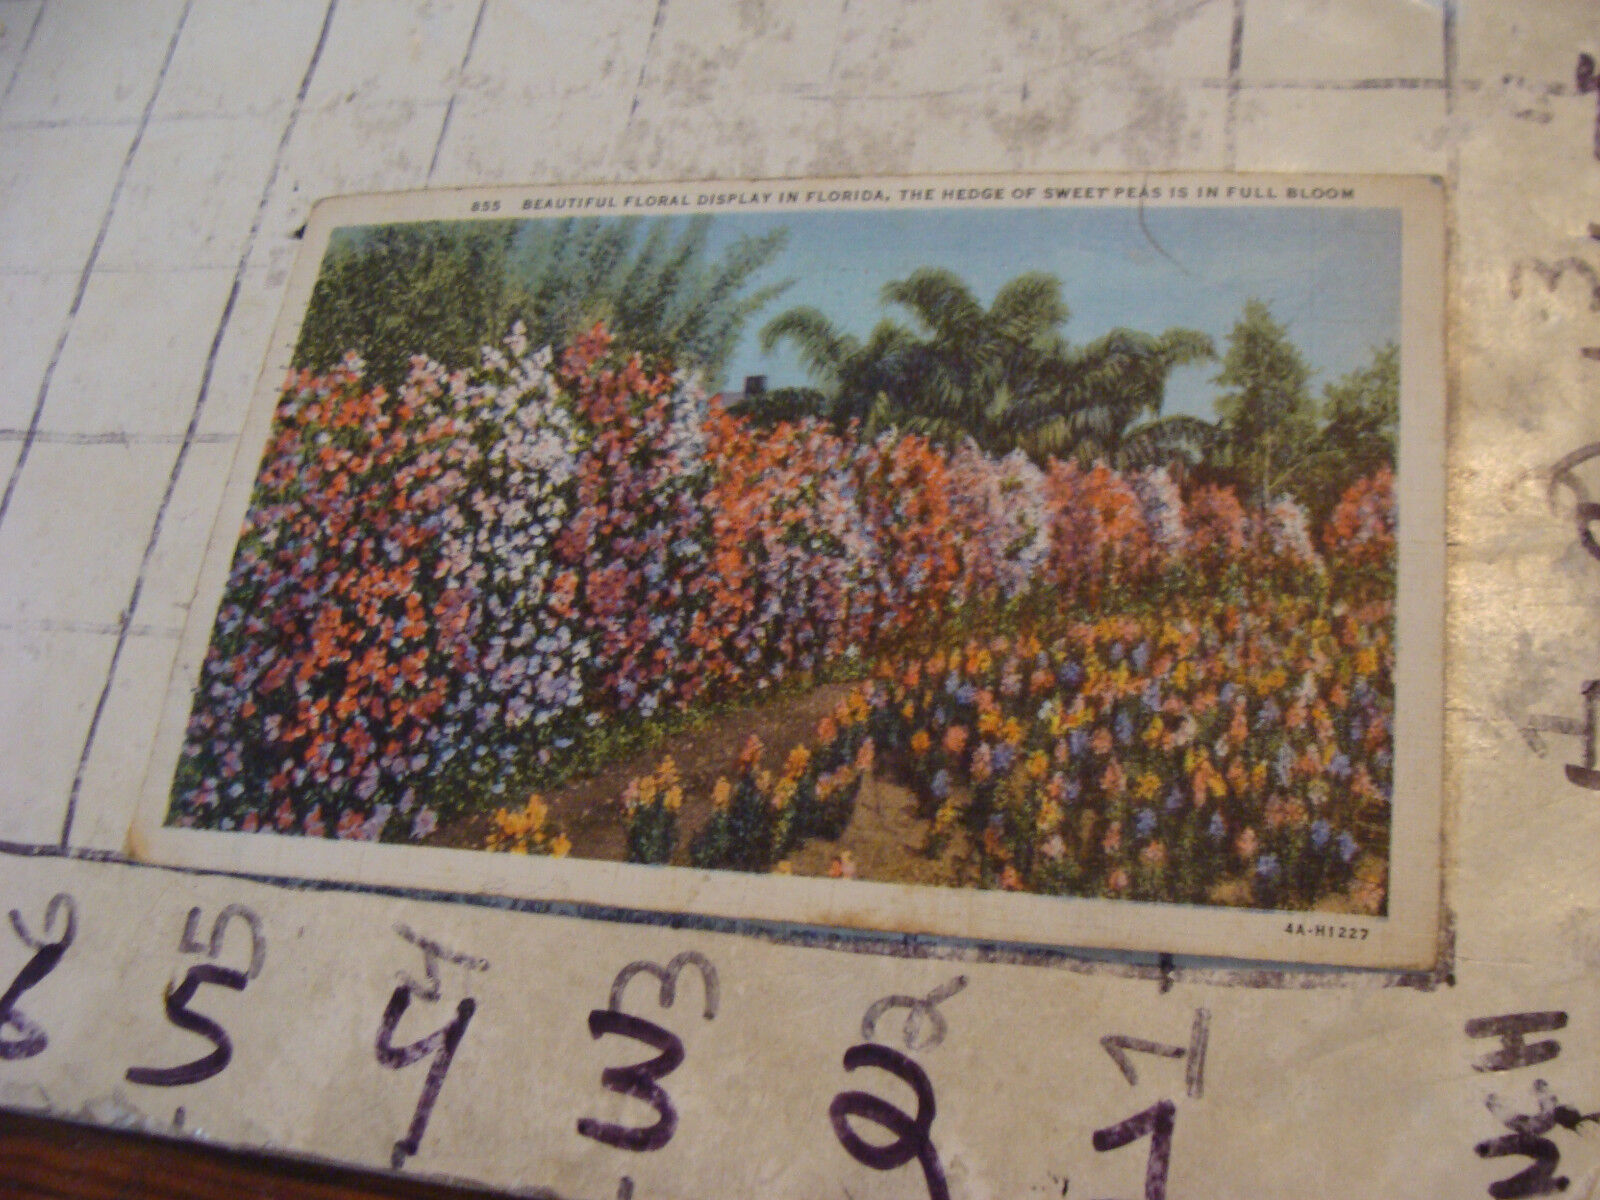 Orig Vint post card 1936 BEAUTIFUL FLORAL DISPLAY IN FLORIDA sweet peas in bloom